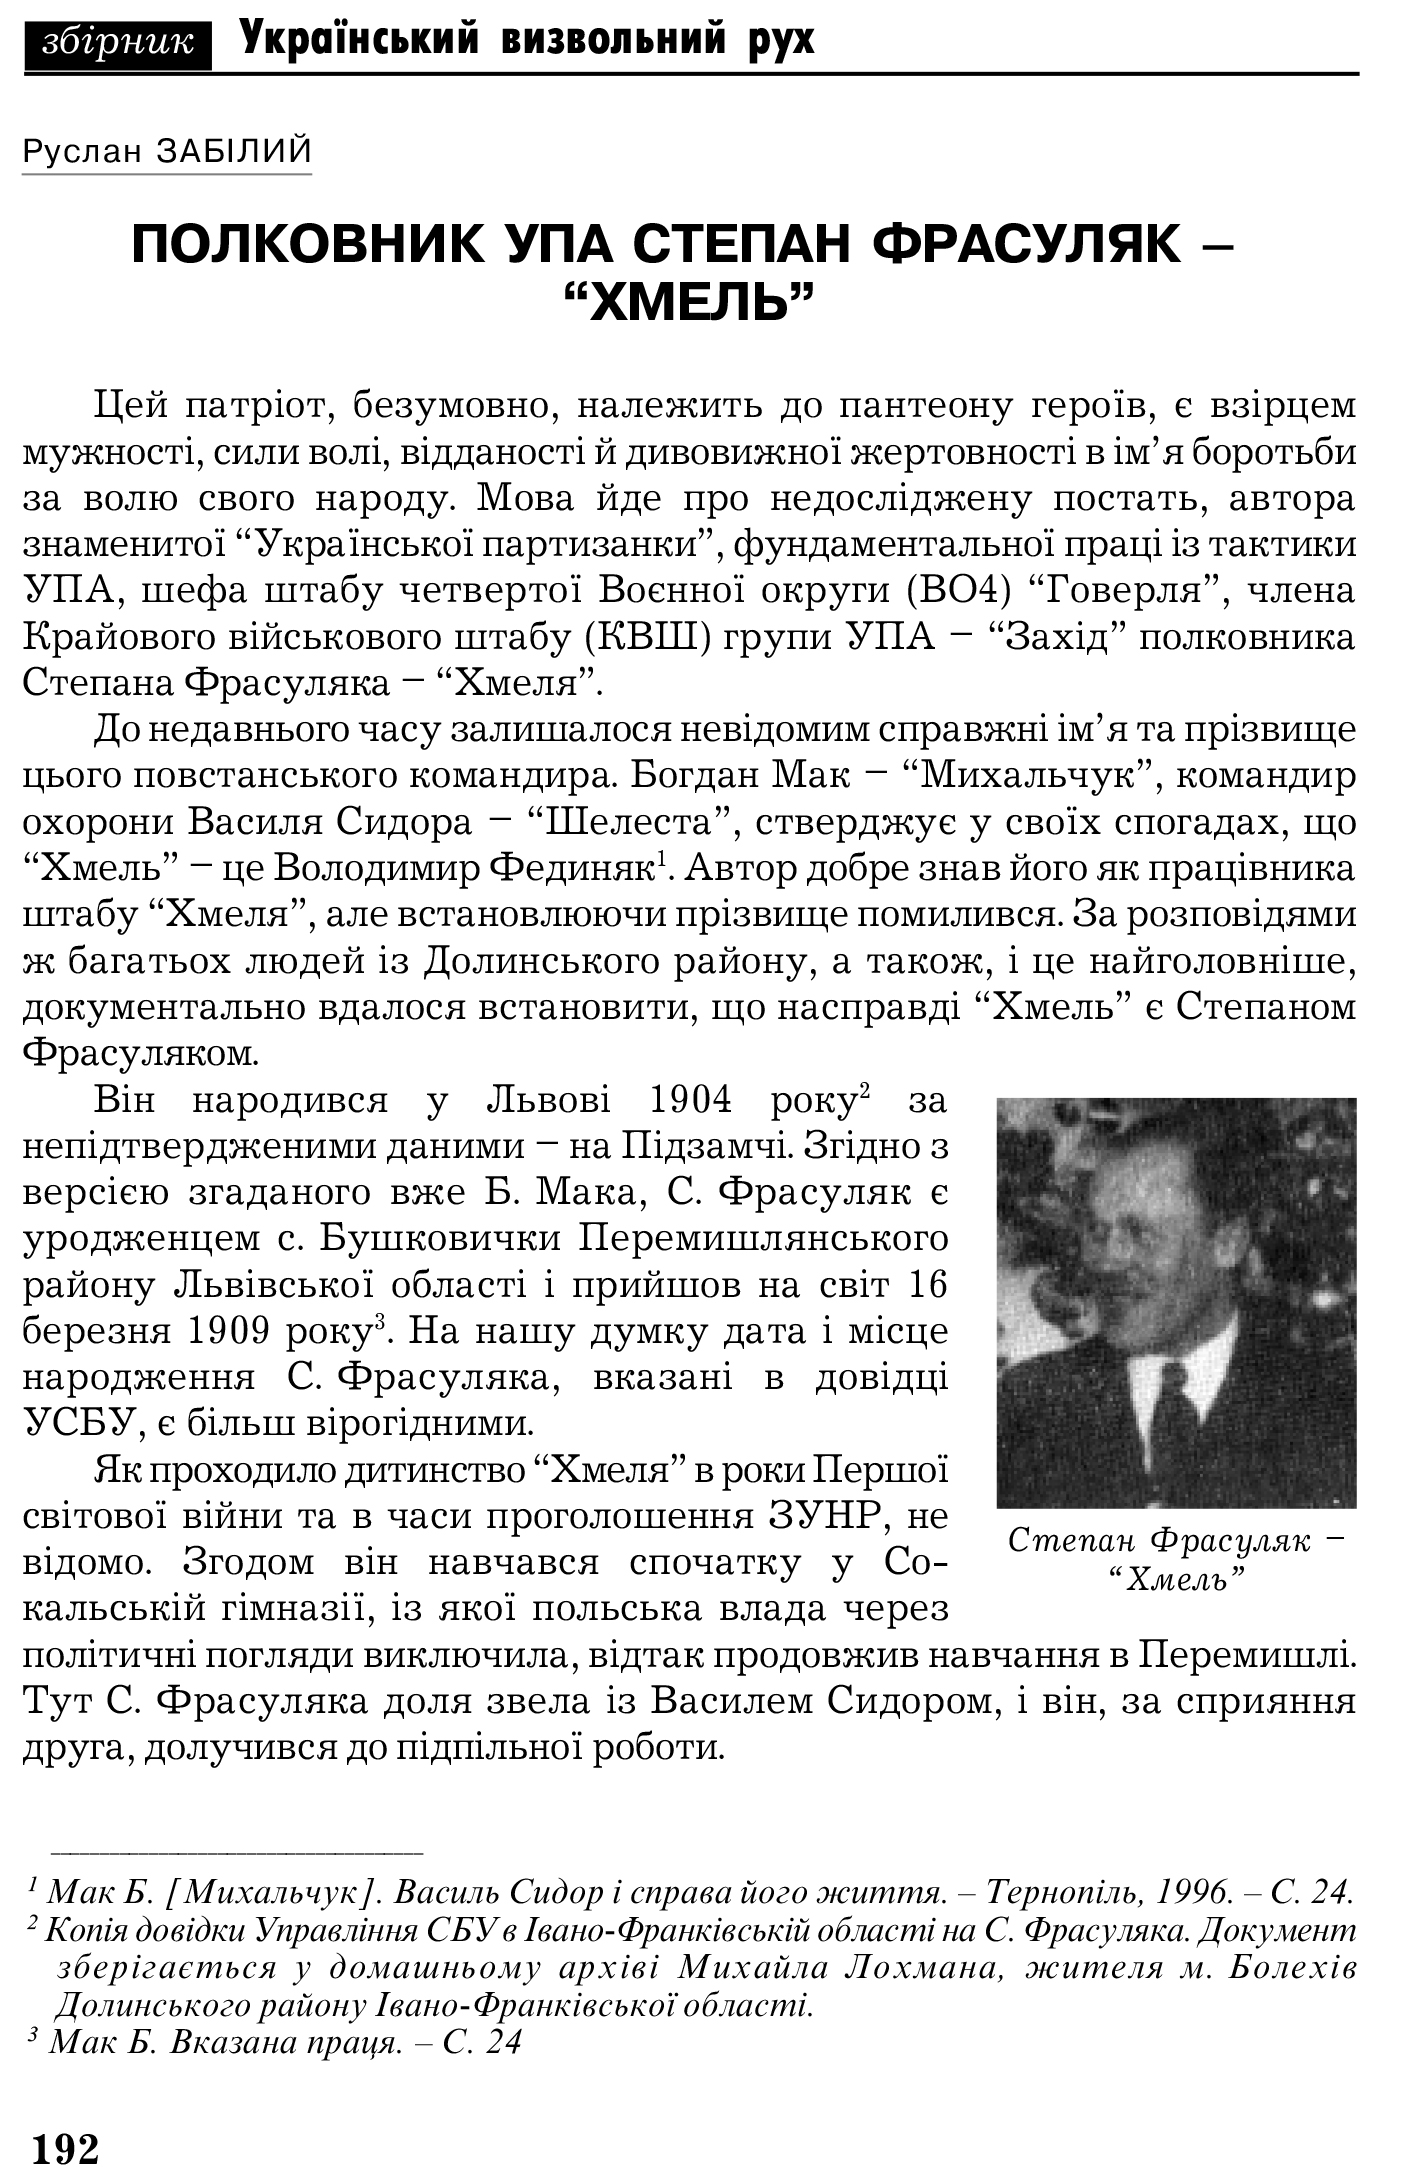 Український визвольний рух №5, ст. 192 - 202